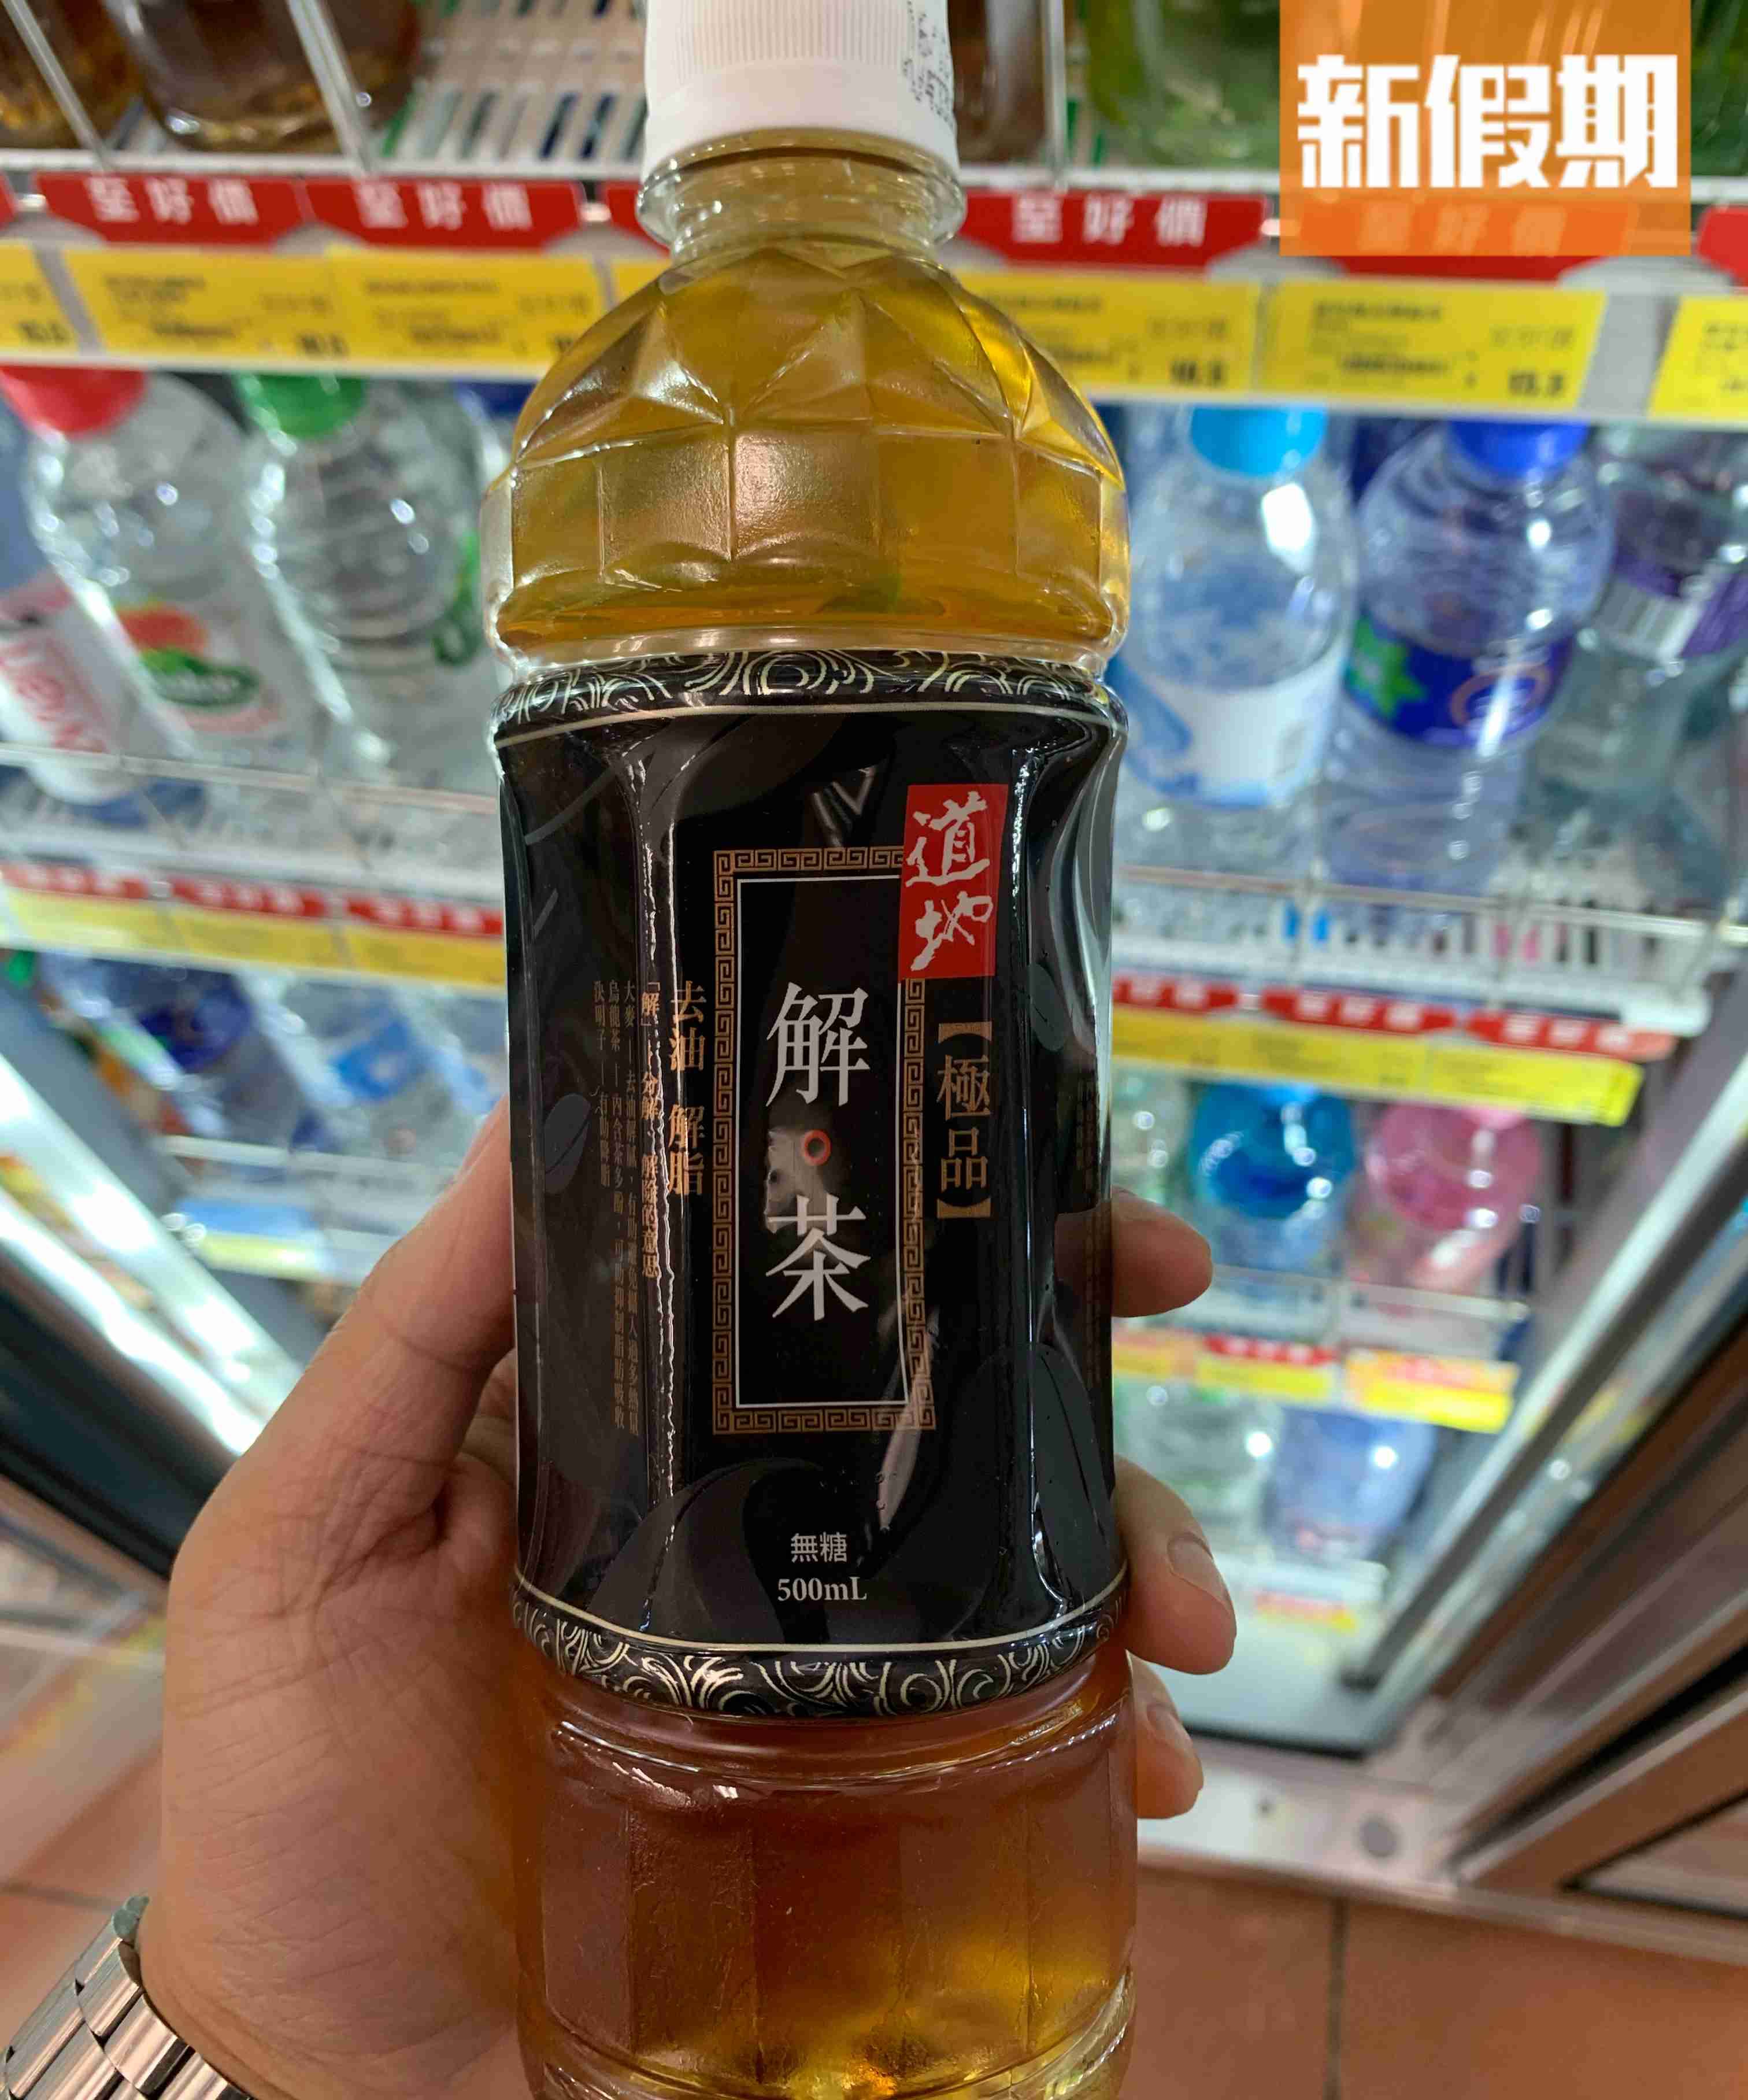 道地解茶500ml/.5 (OK便利店)